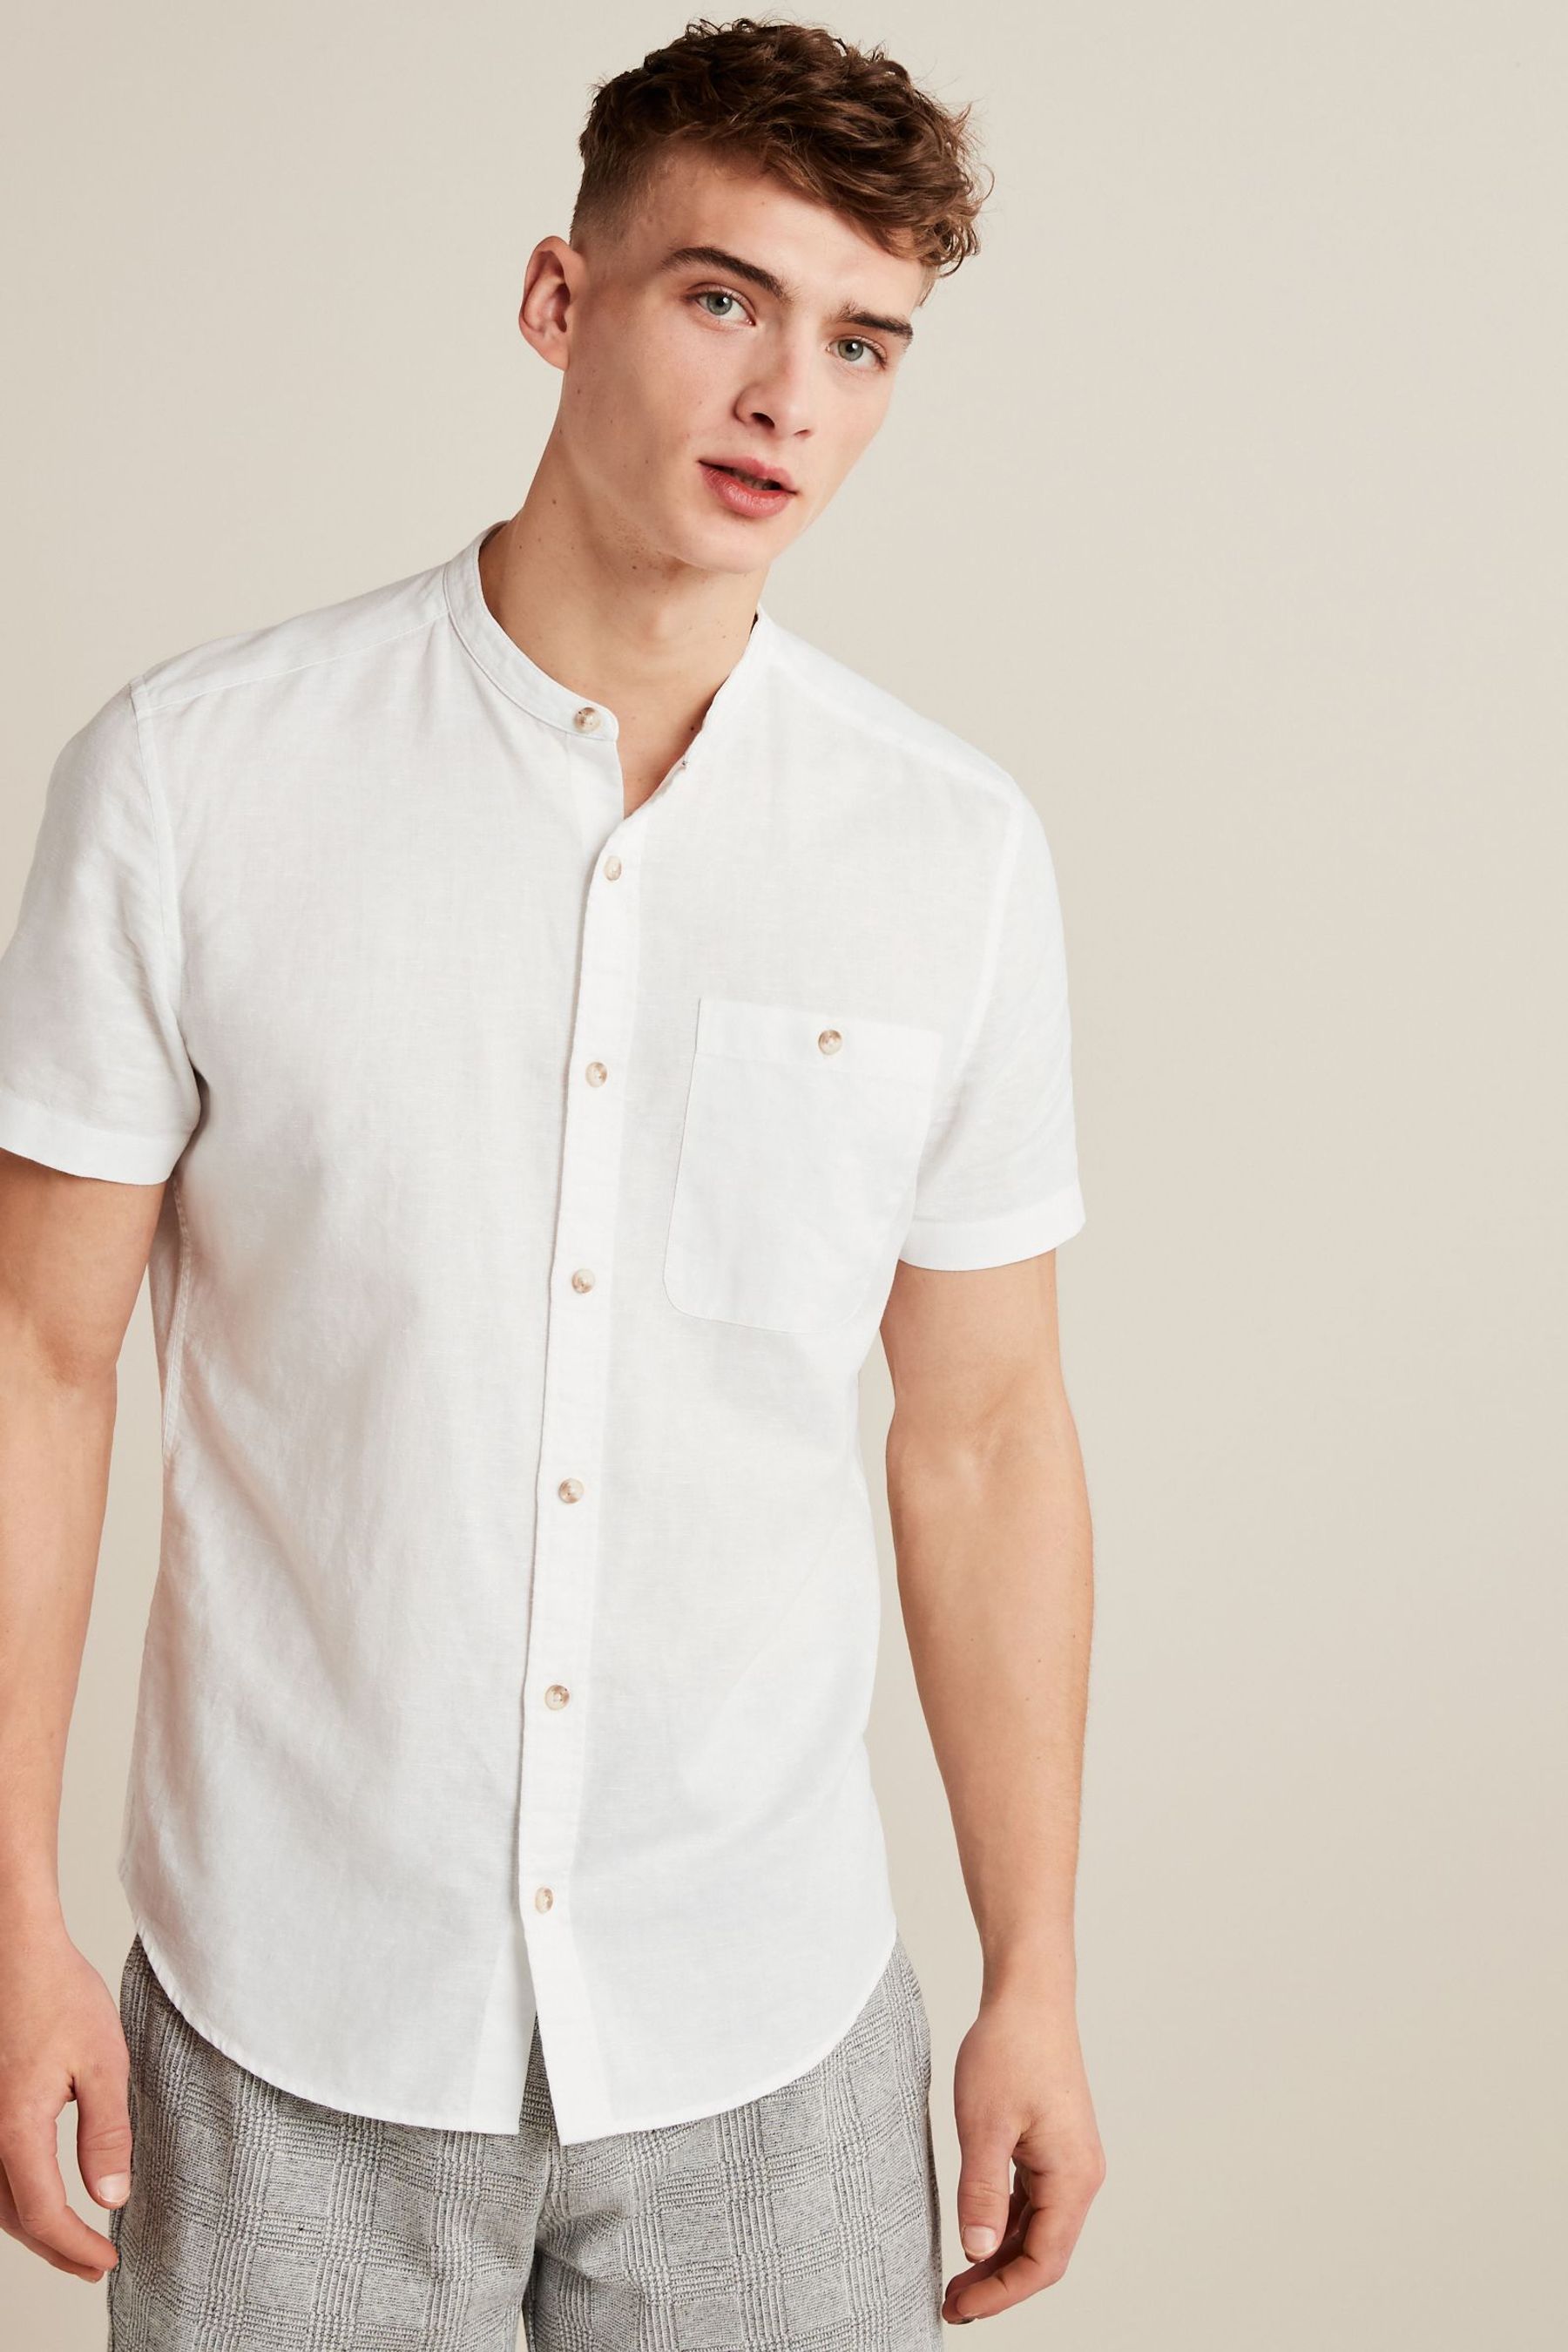 Buy Linen Blend Short Sleeve Shirt from the Next UK online shop